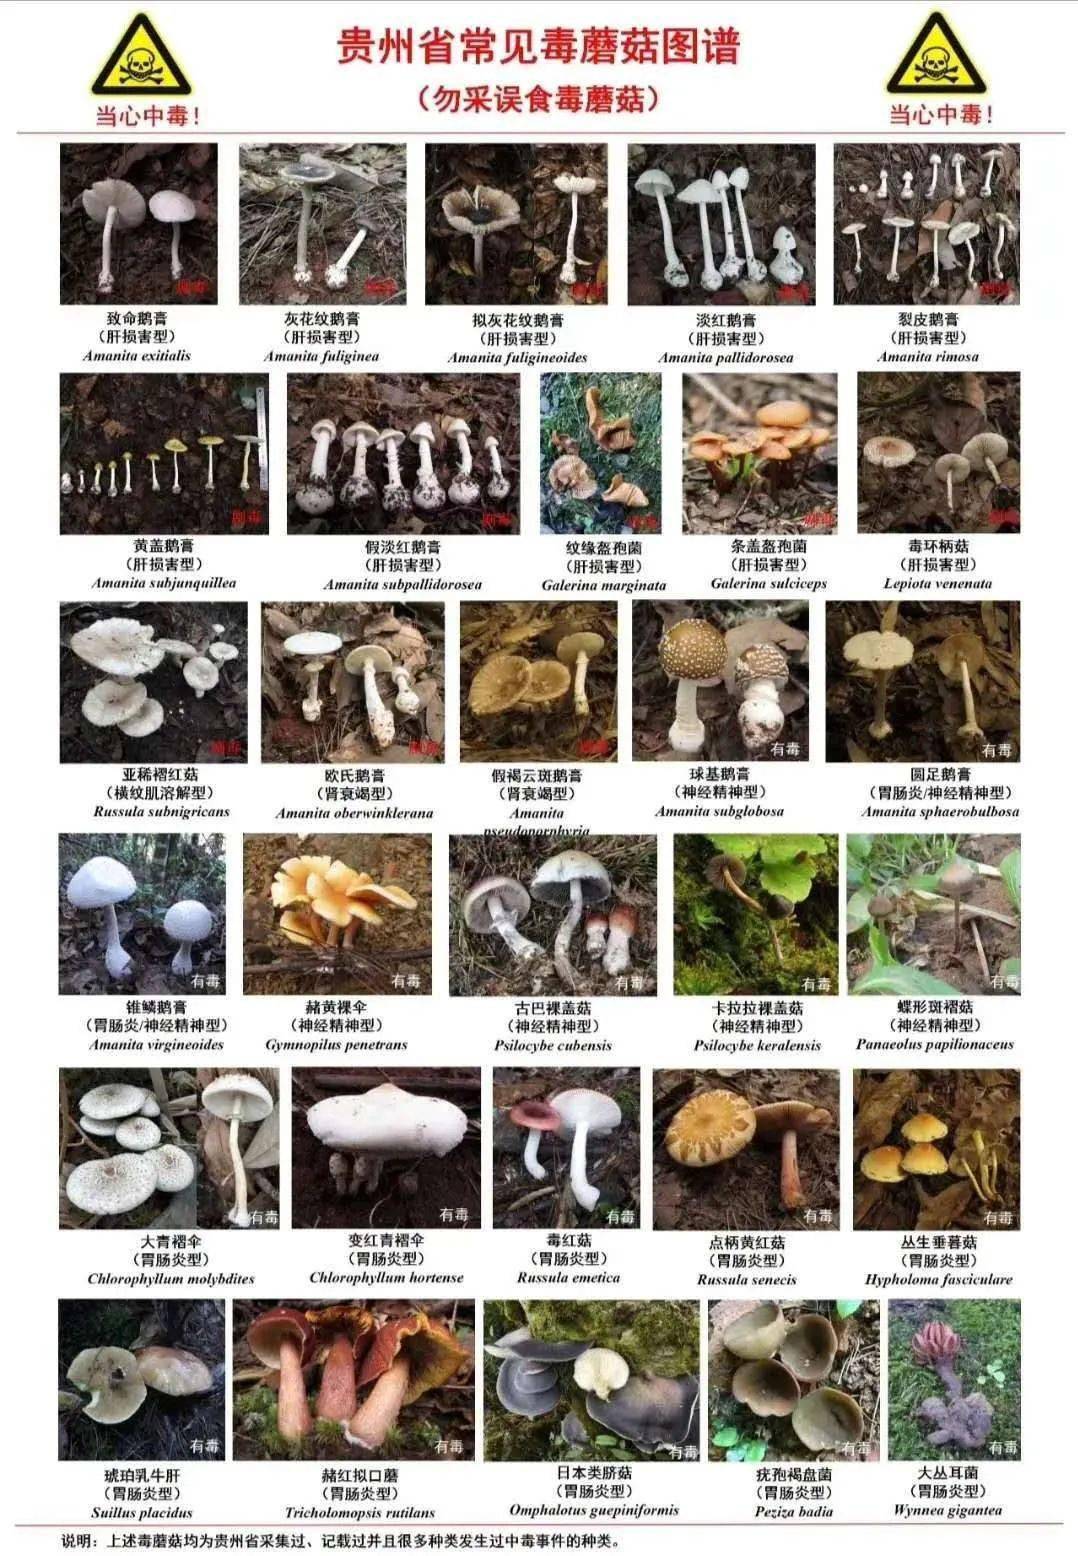 彩色的蘑菇有没有毒_彩色的毒蘑菇_彩色的蘑菇有毒